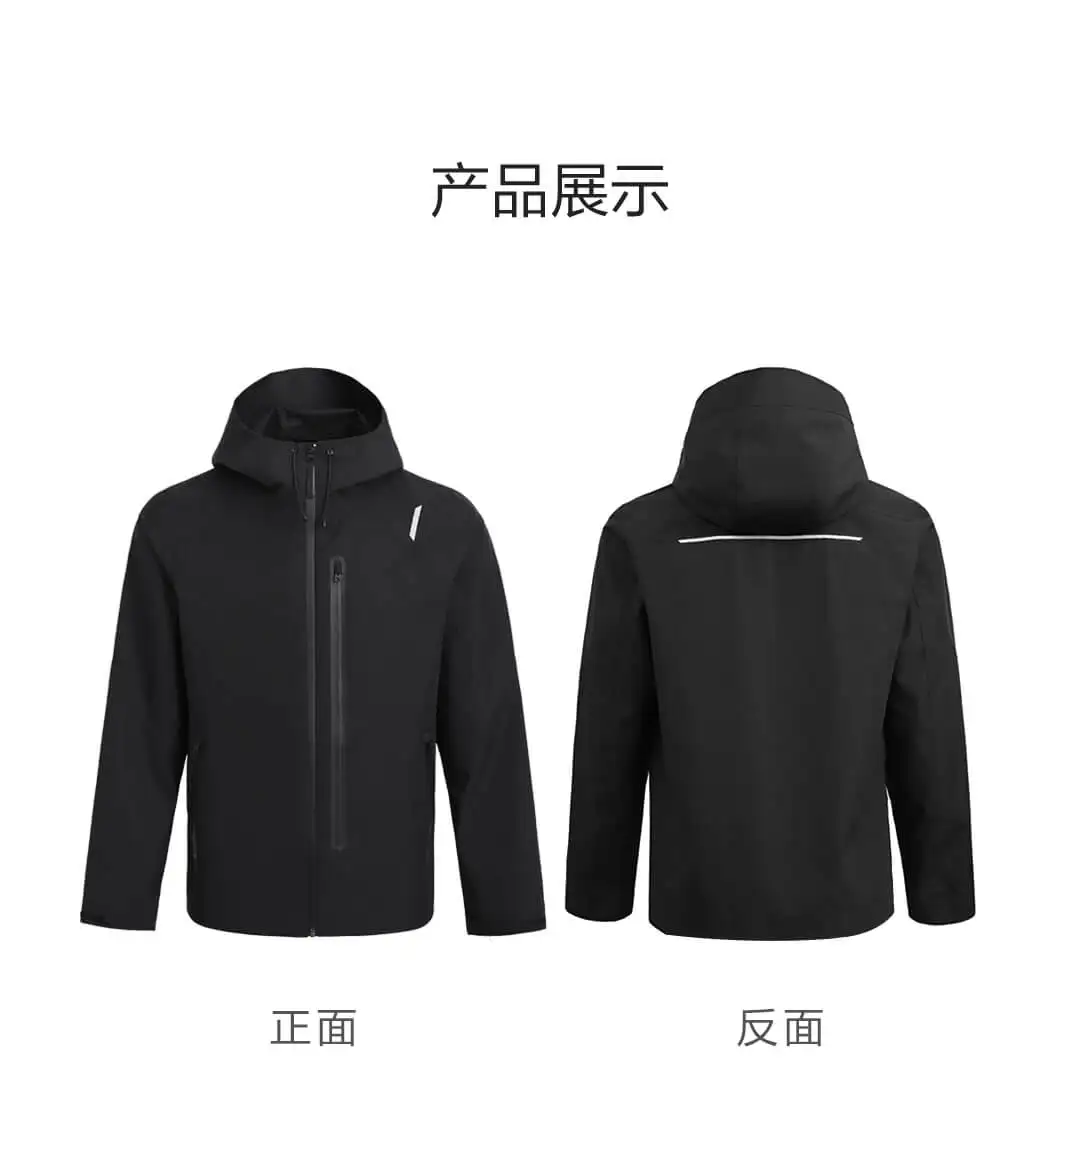 Xiaomi Youpin хлопковая куртка для всех погодных условий, ветрозащитная Водонепроницаемая практичная многофункциональная застежка-молния, держатель для телефона - Цвет: XL